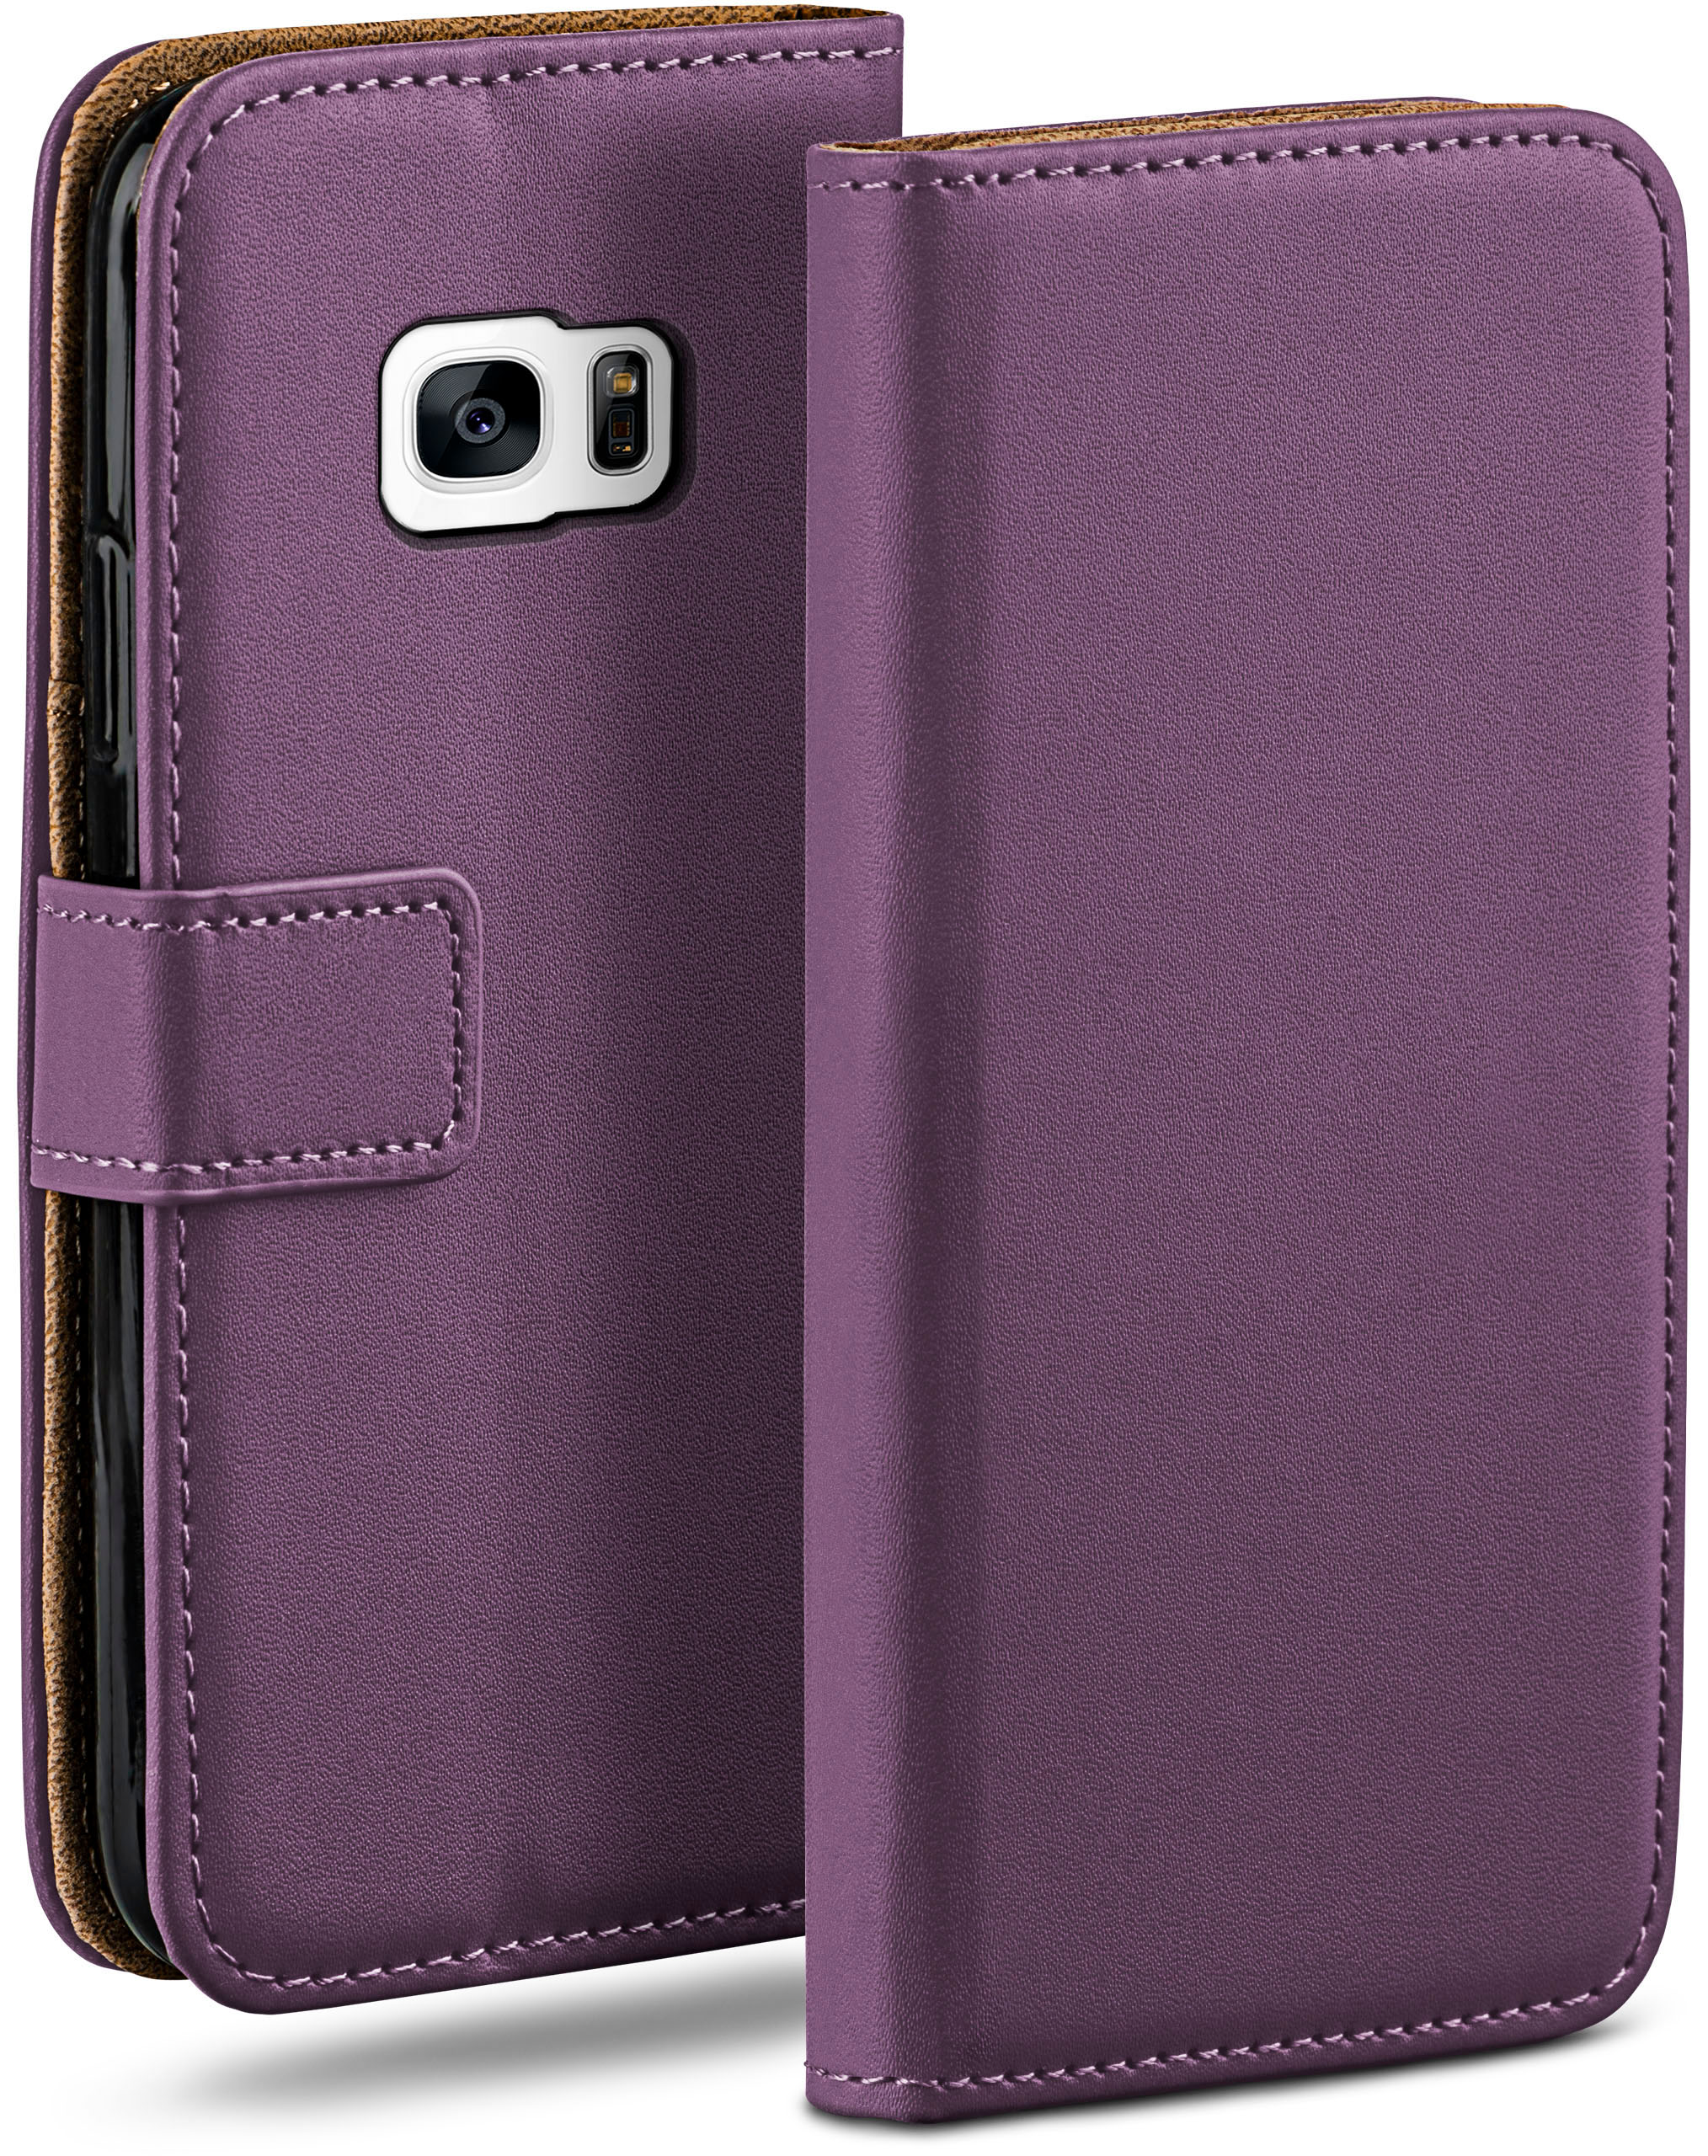 MOEX Book Case, Bookcover, Samsung, Indigo-Violet S7, Galaxy